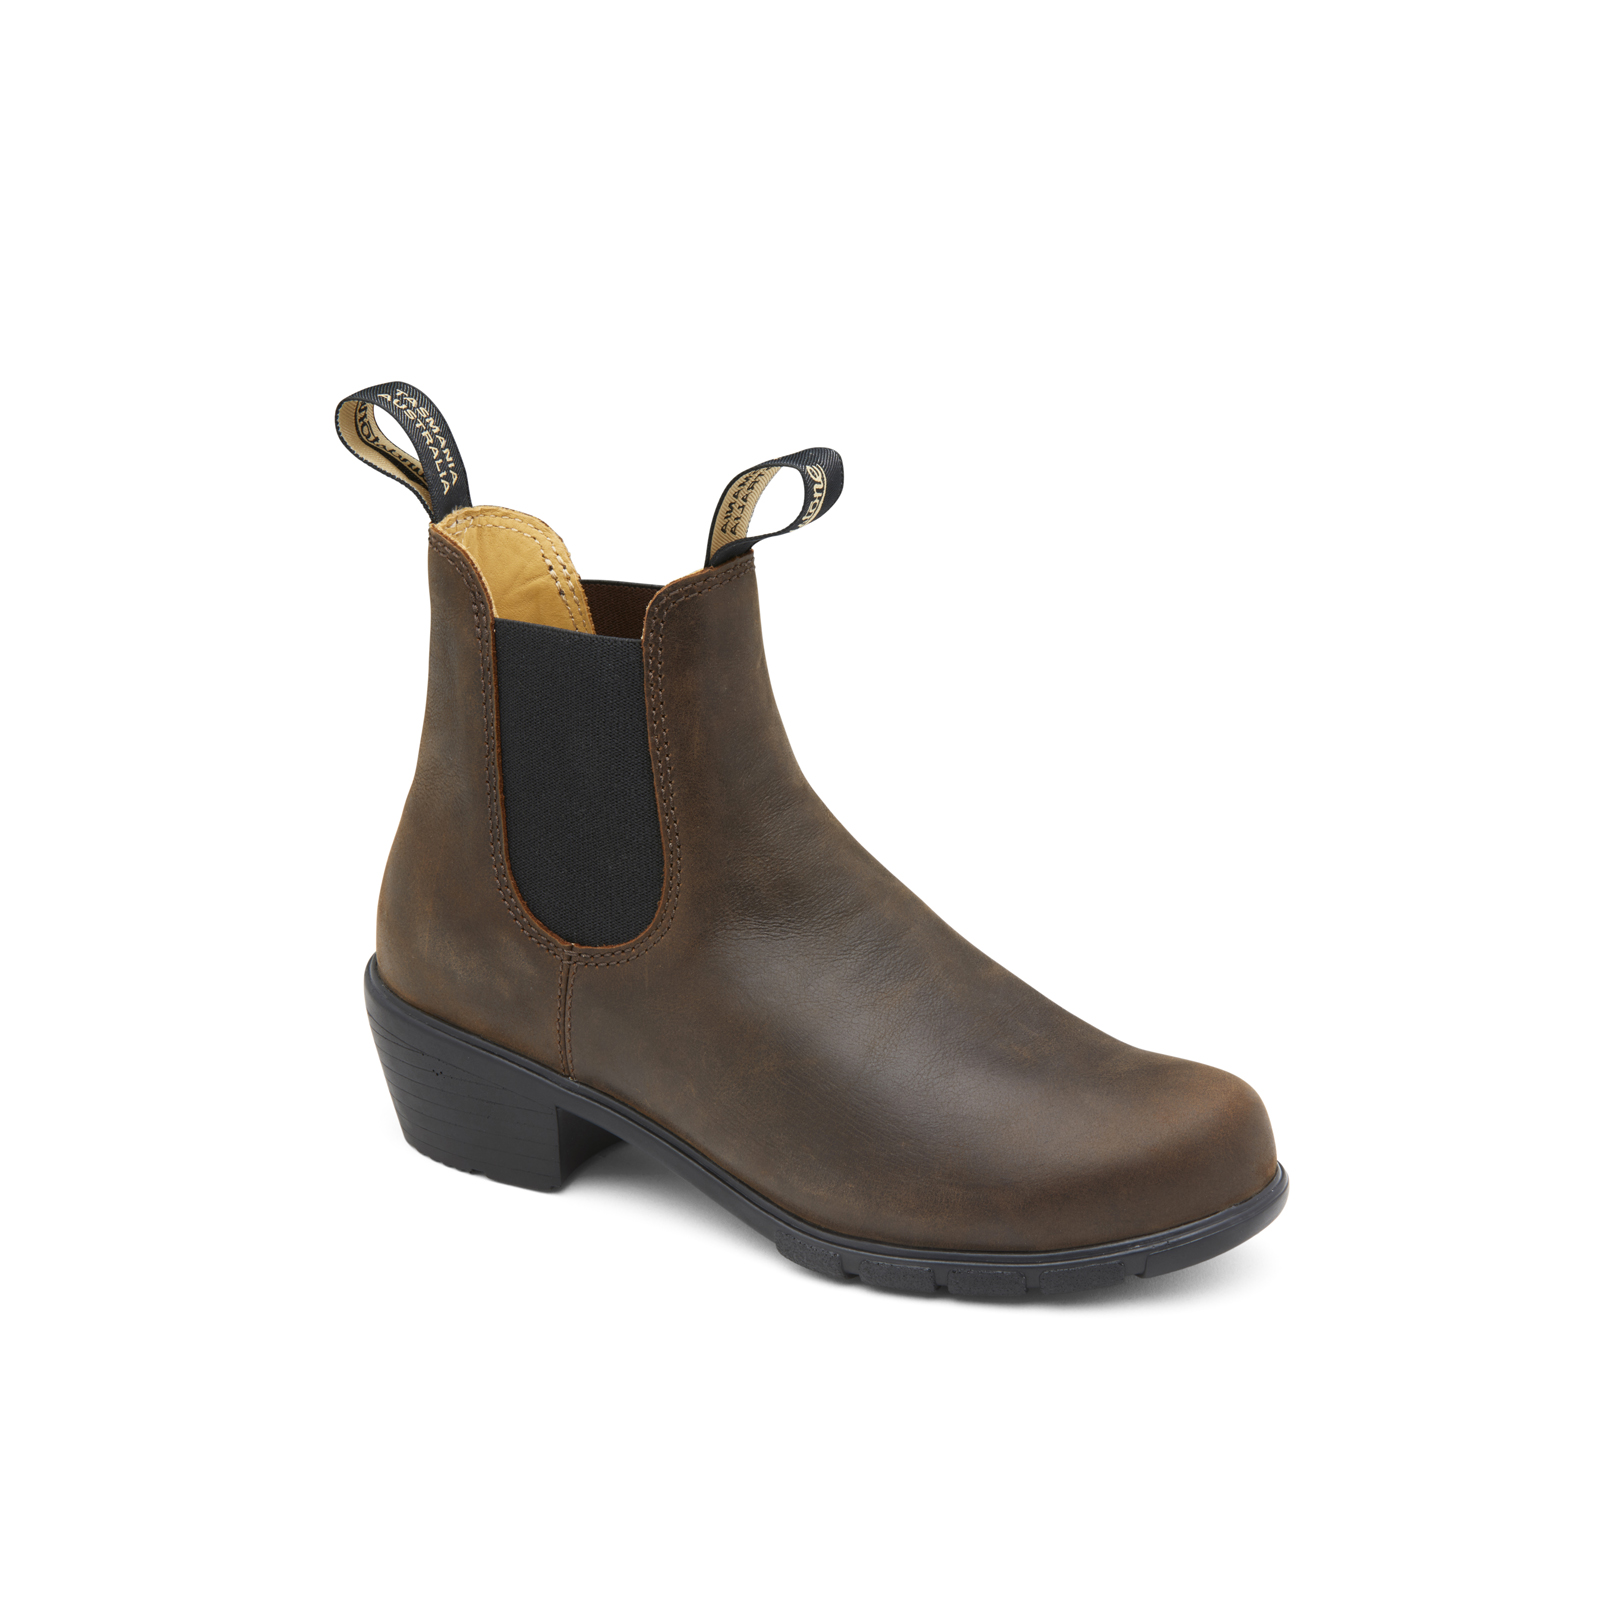 1673 Women's Heel Boots - Antique Brown